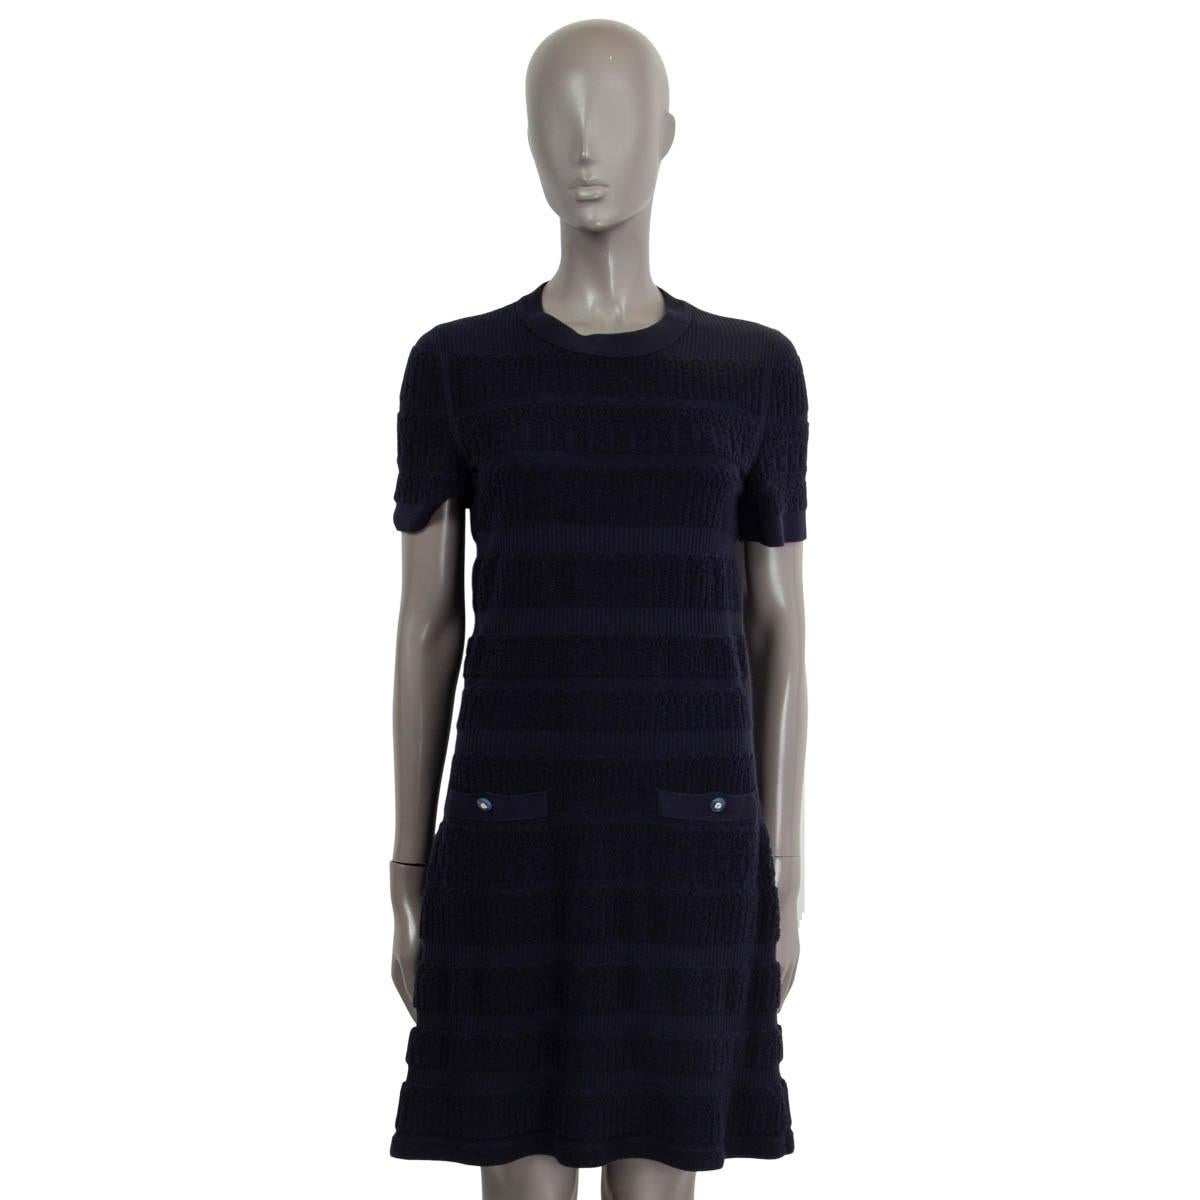 Noir CHANEL bleu marine laine 2019 19B robe manches courtes en tricot texturé 38 S en vente